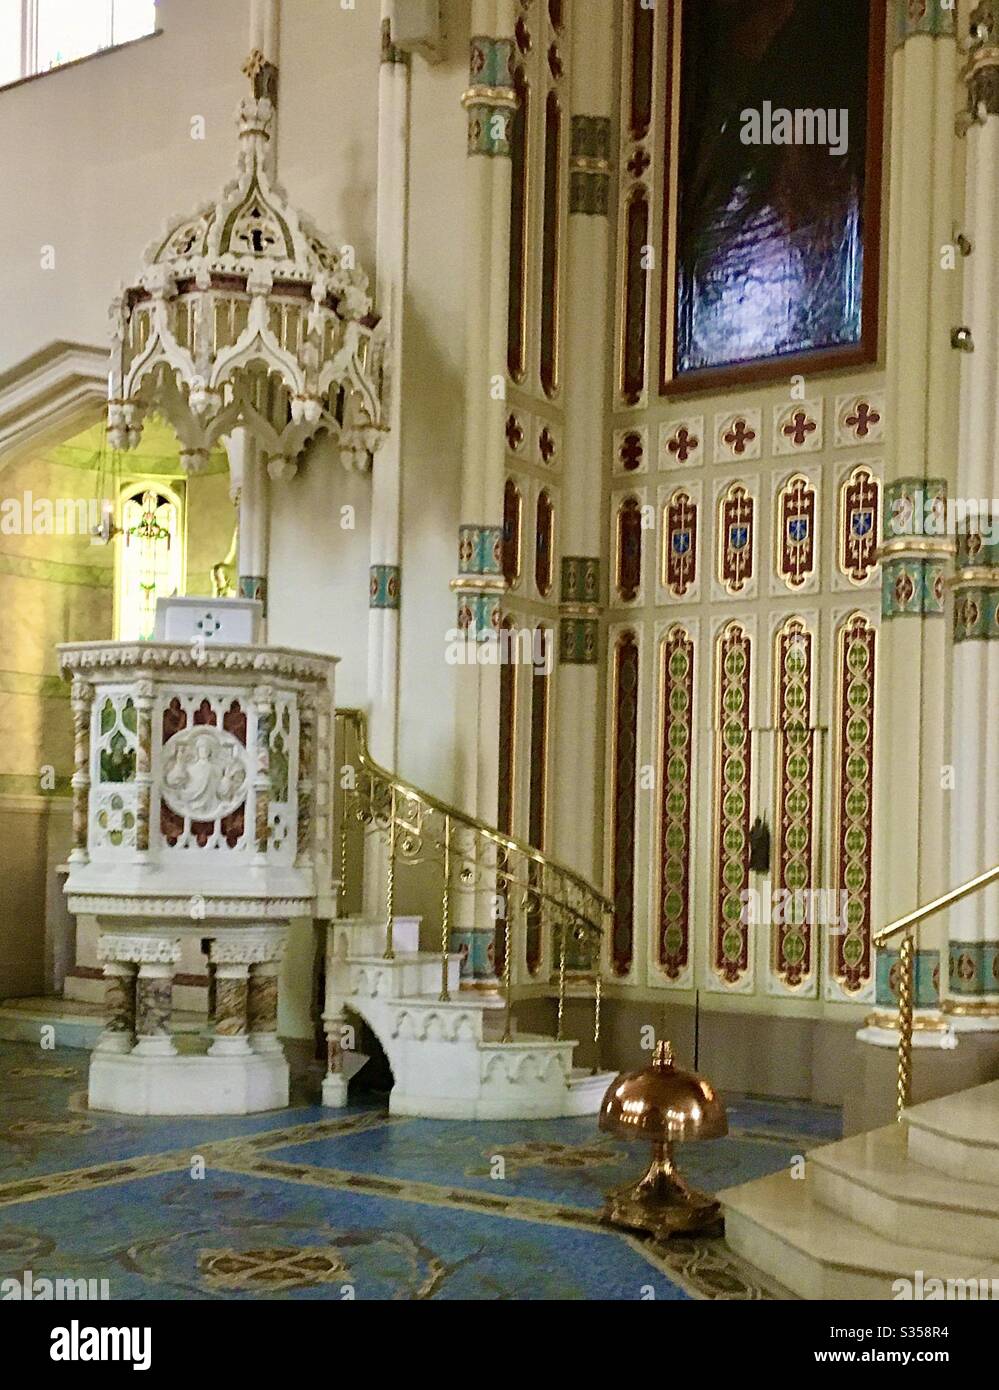 El hermoso púlpito de la Iglesia Católica Romana de Belfast, Irlanda del Norte, de San Malachy. El interior de la iglesia, al estilo del período Tudor (1485-1603), ha ganado muchos premios por su restauración. Foto de stock